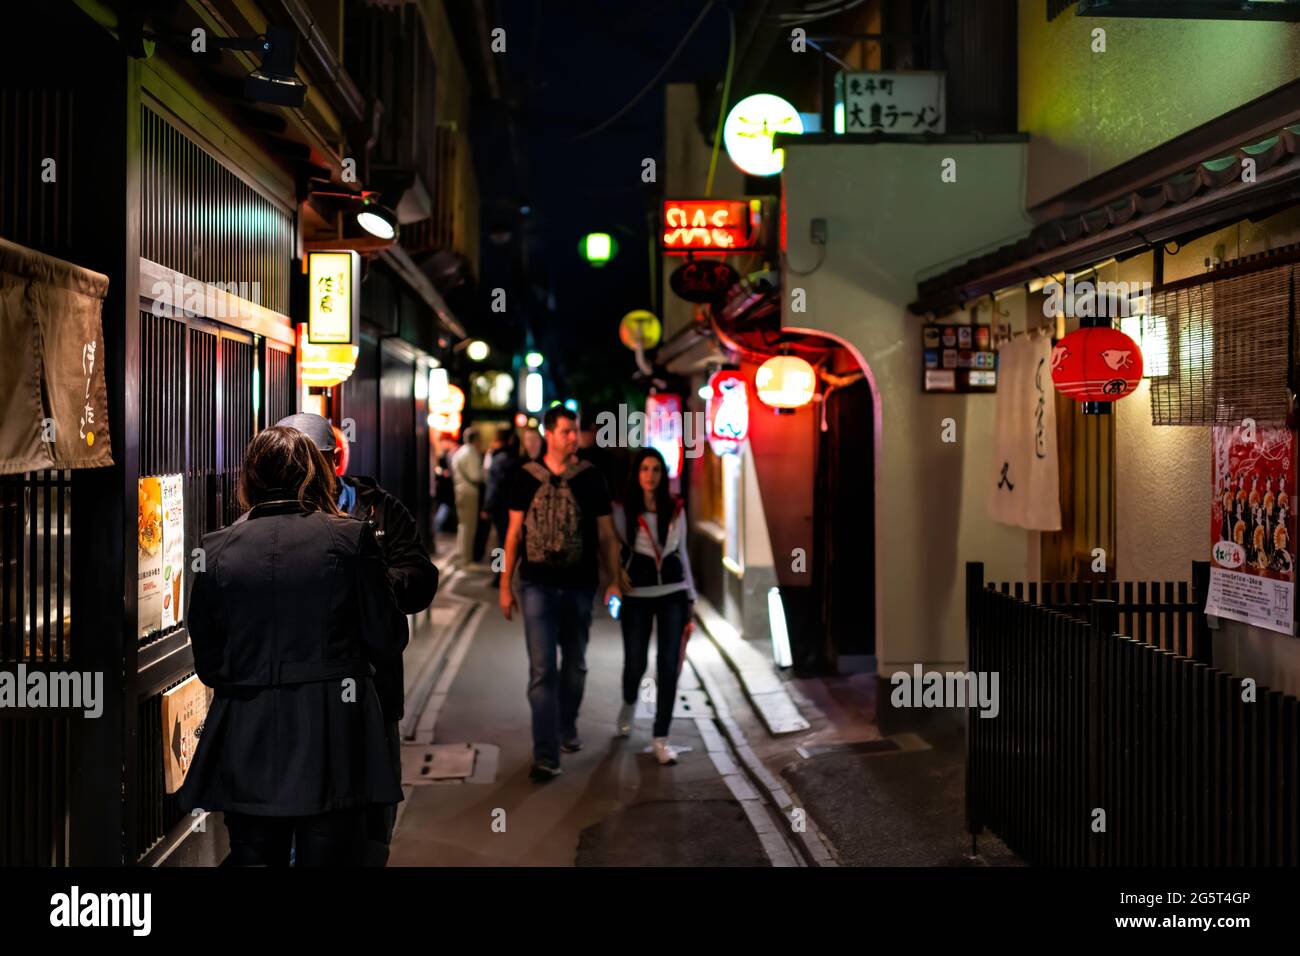 Kyoto, Japón - 16 de abril de 2019: Personas caminando por el distrito de Pontocho callejón calle estrecha en la noche oscura con faroles iluminados y restaurantes izakaya Foto de stock